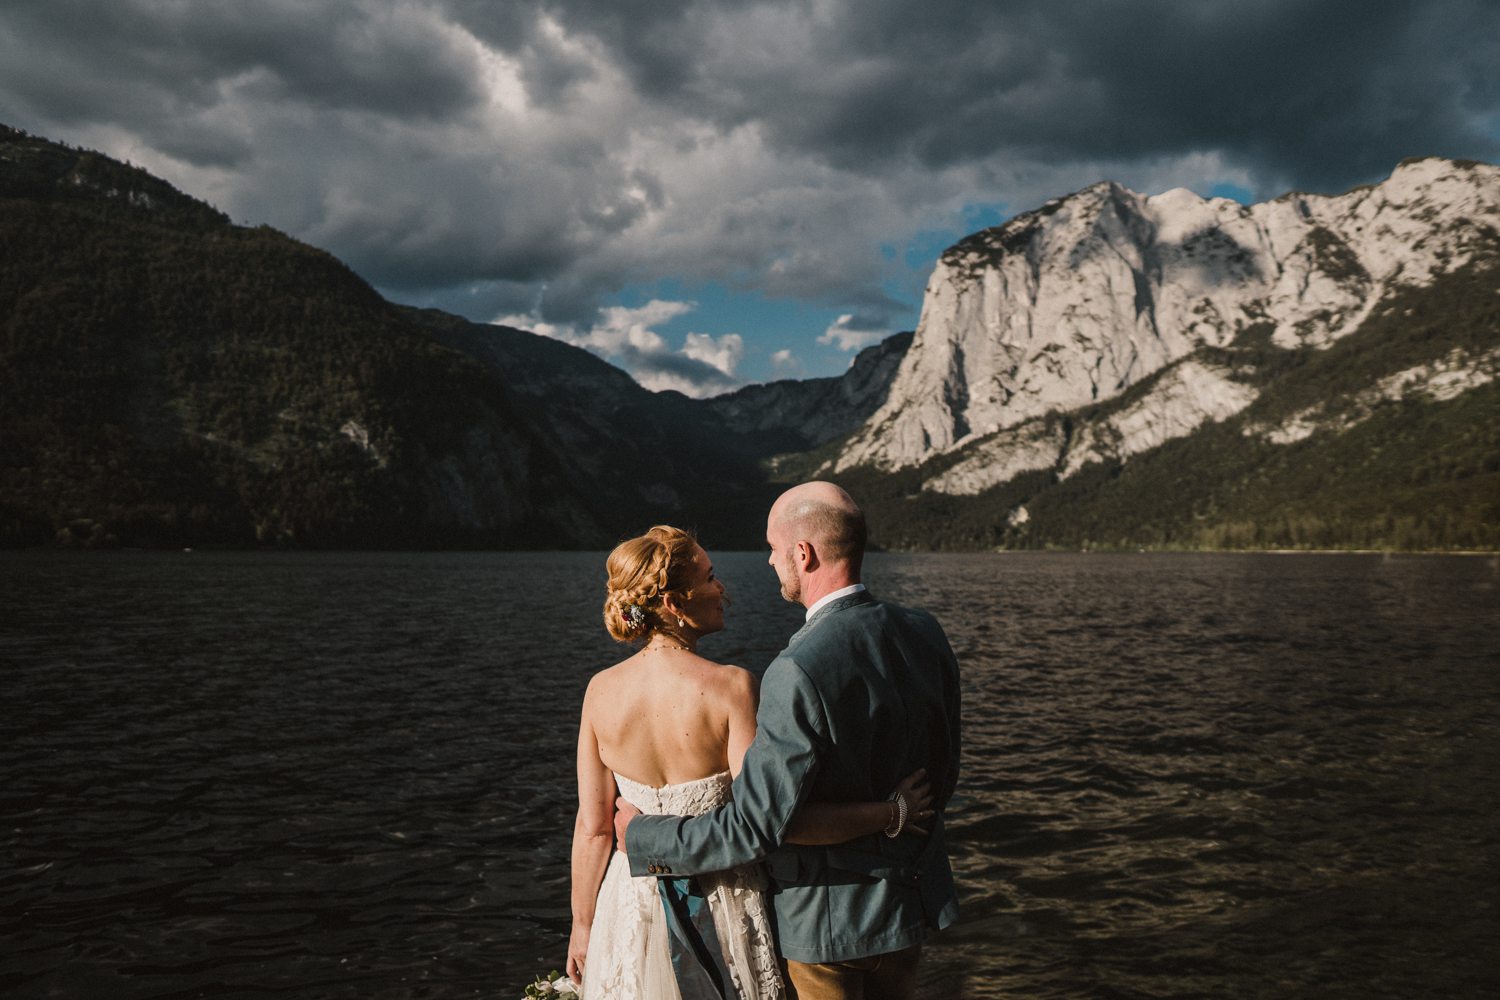 Brautpaar in wunderschöner Landschaft bei Hochzeitsreportage Altaussee